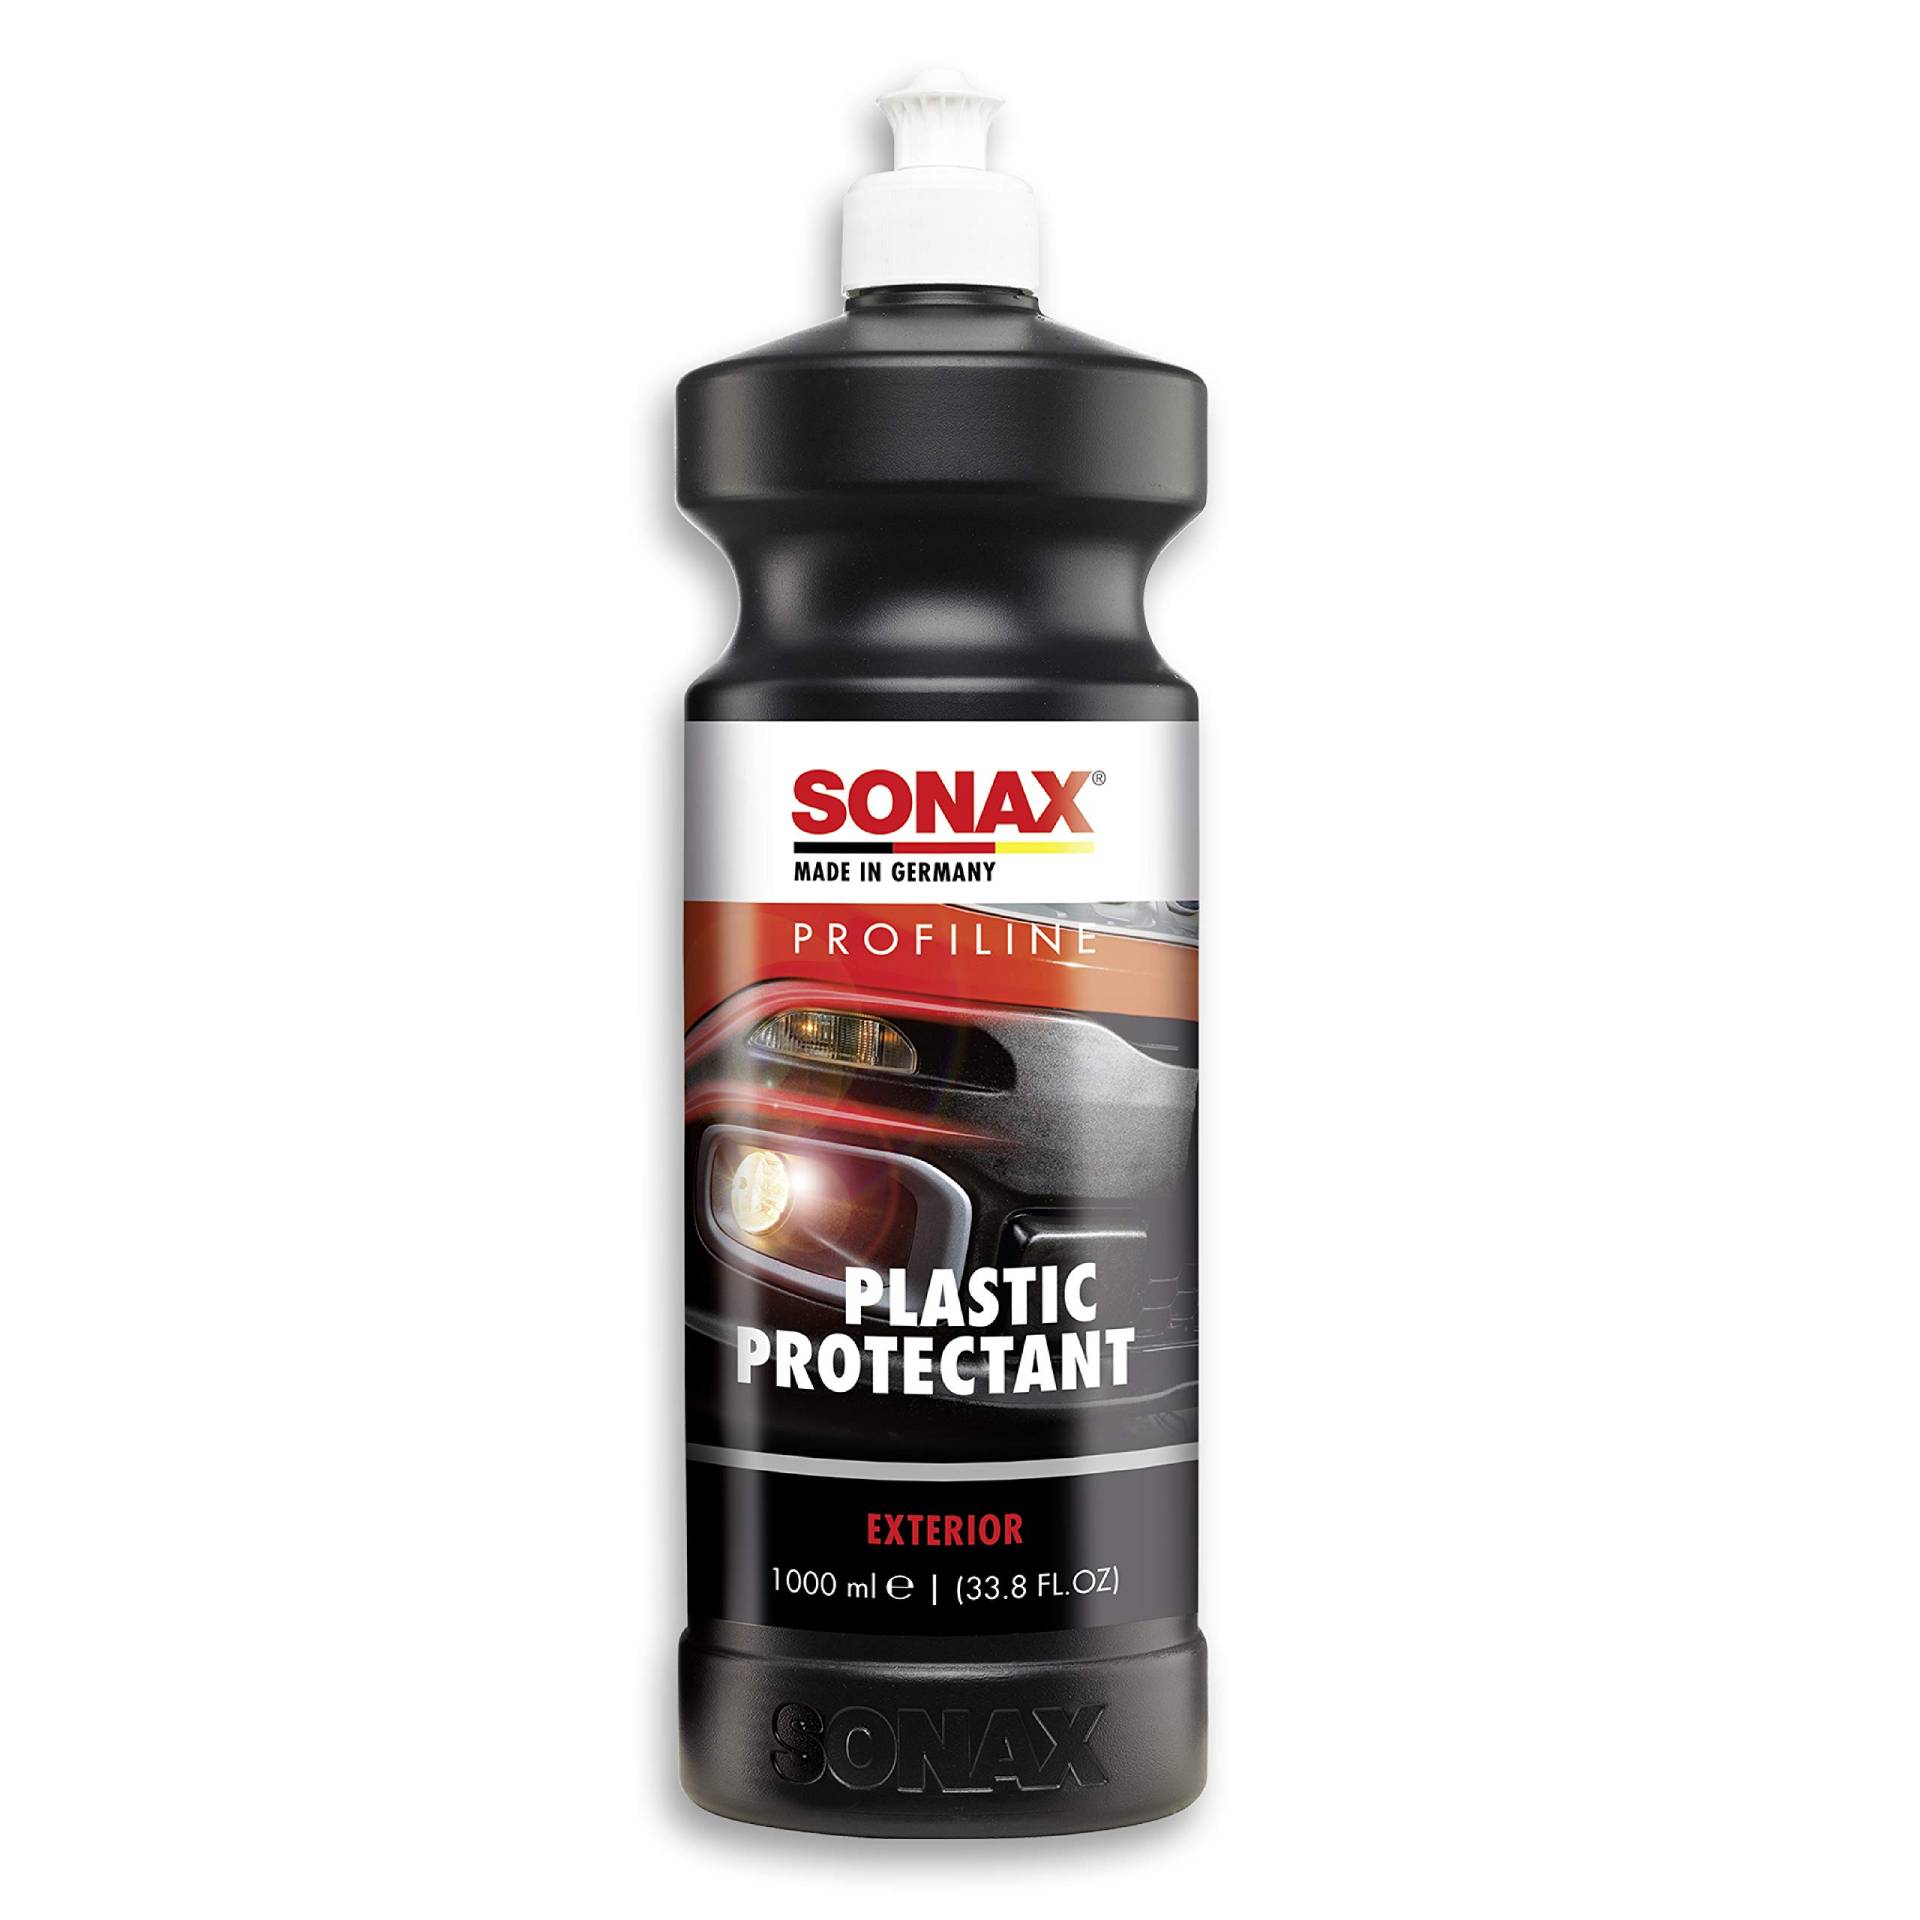 SONAX PROFILINE Plastic Protectant Exterior (1 Liter) Silikonfreier Kunststoffpfleger für unlackierte Kunststoffteile, Art-Nr. 02103000 von SONAX